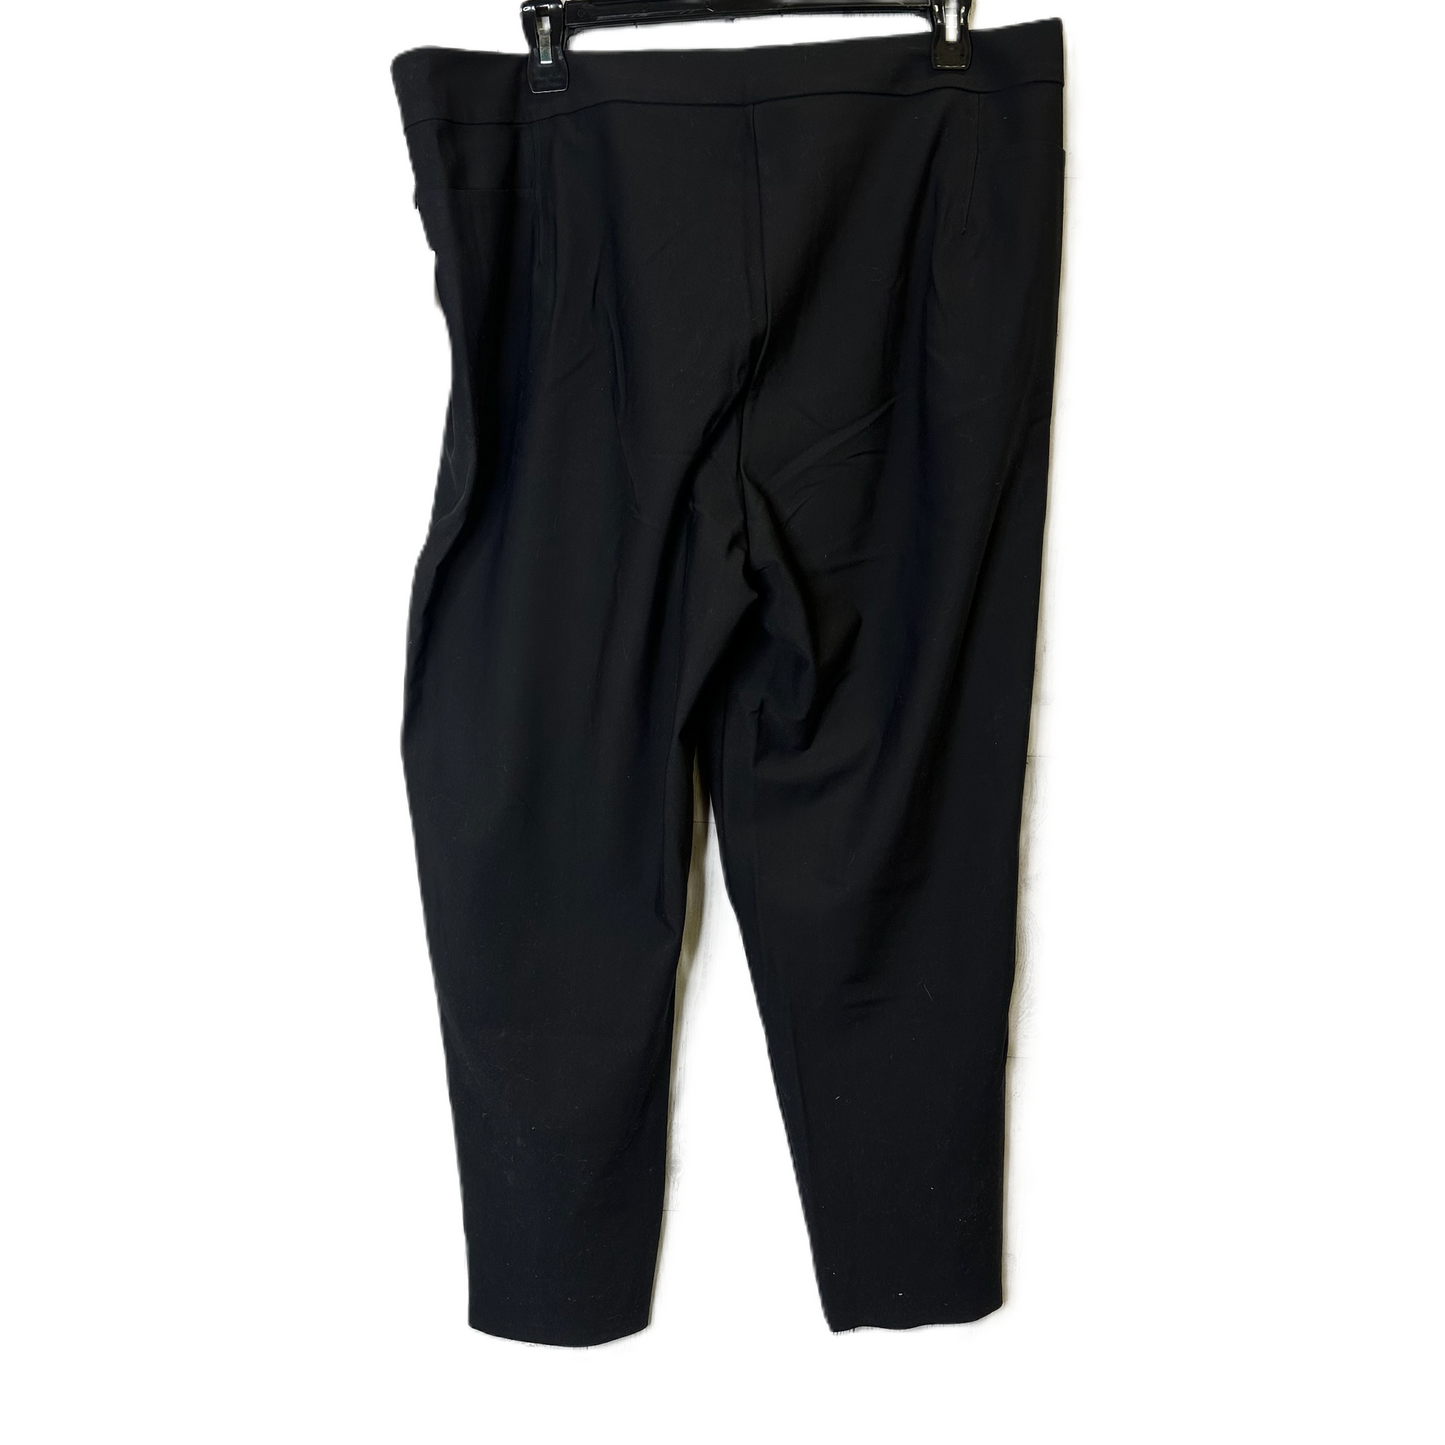 Black Pants Dress By Athleta, Size: 3x